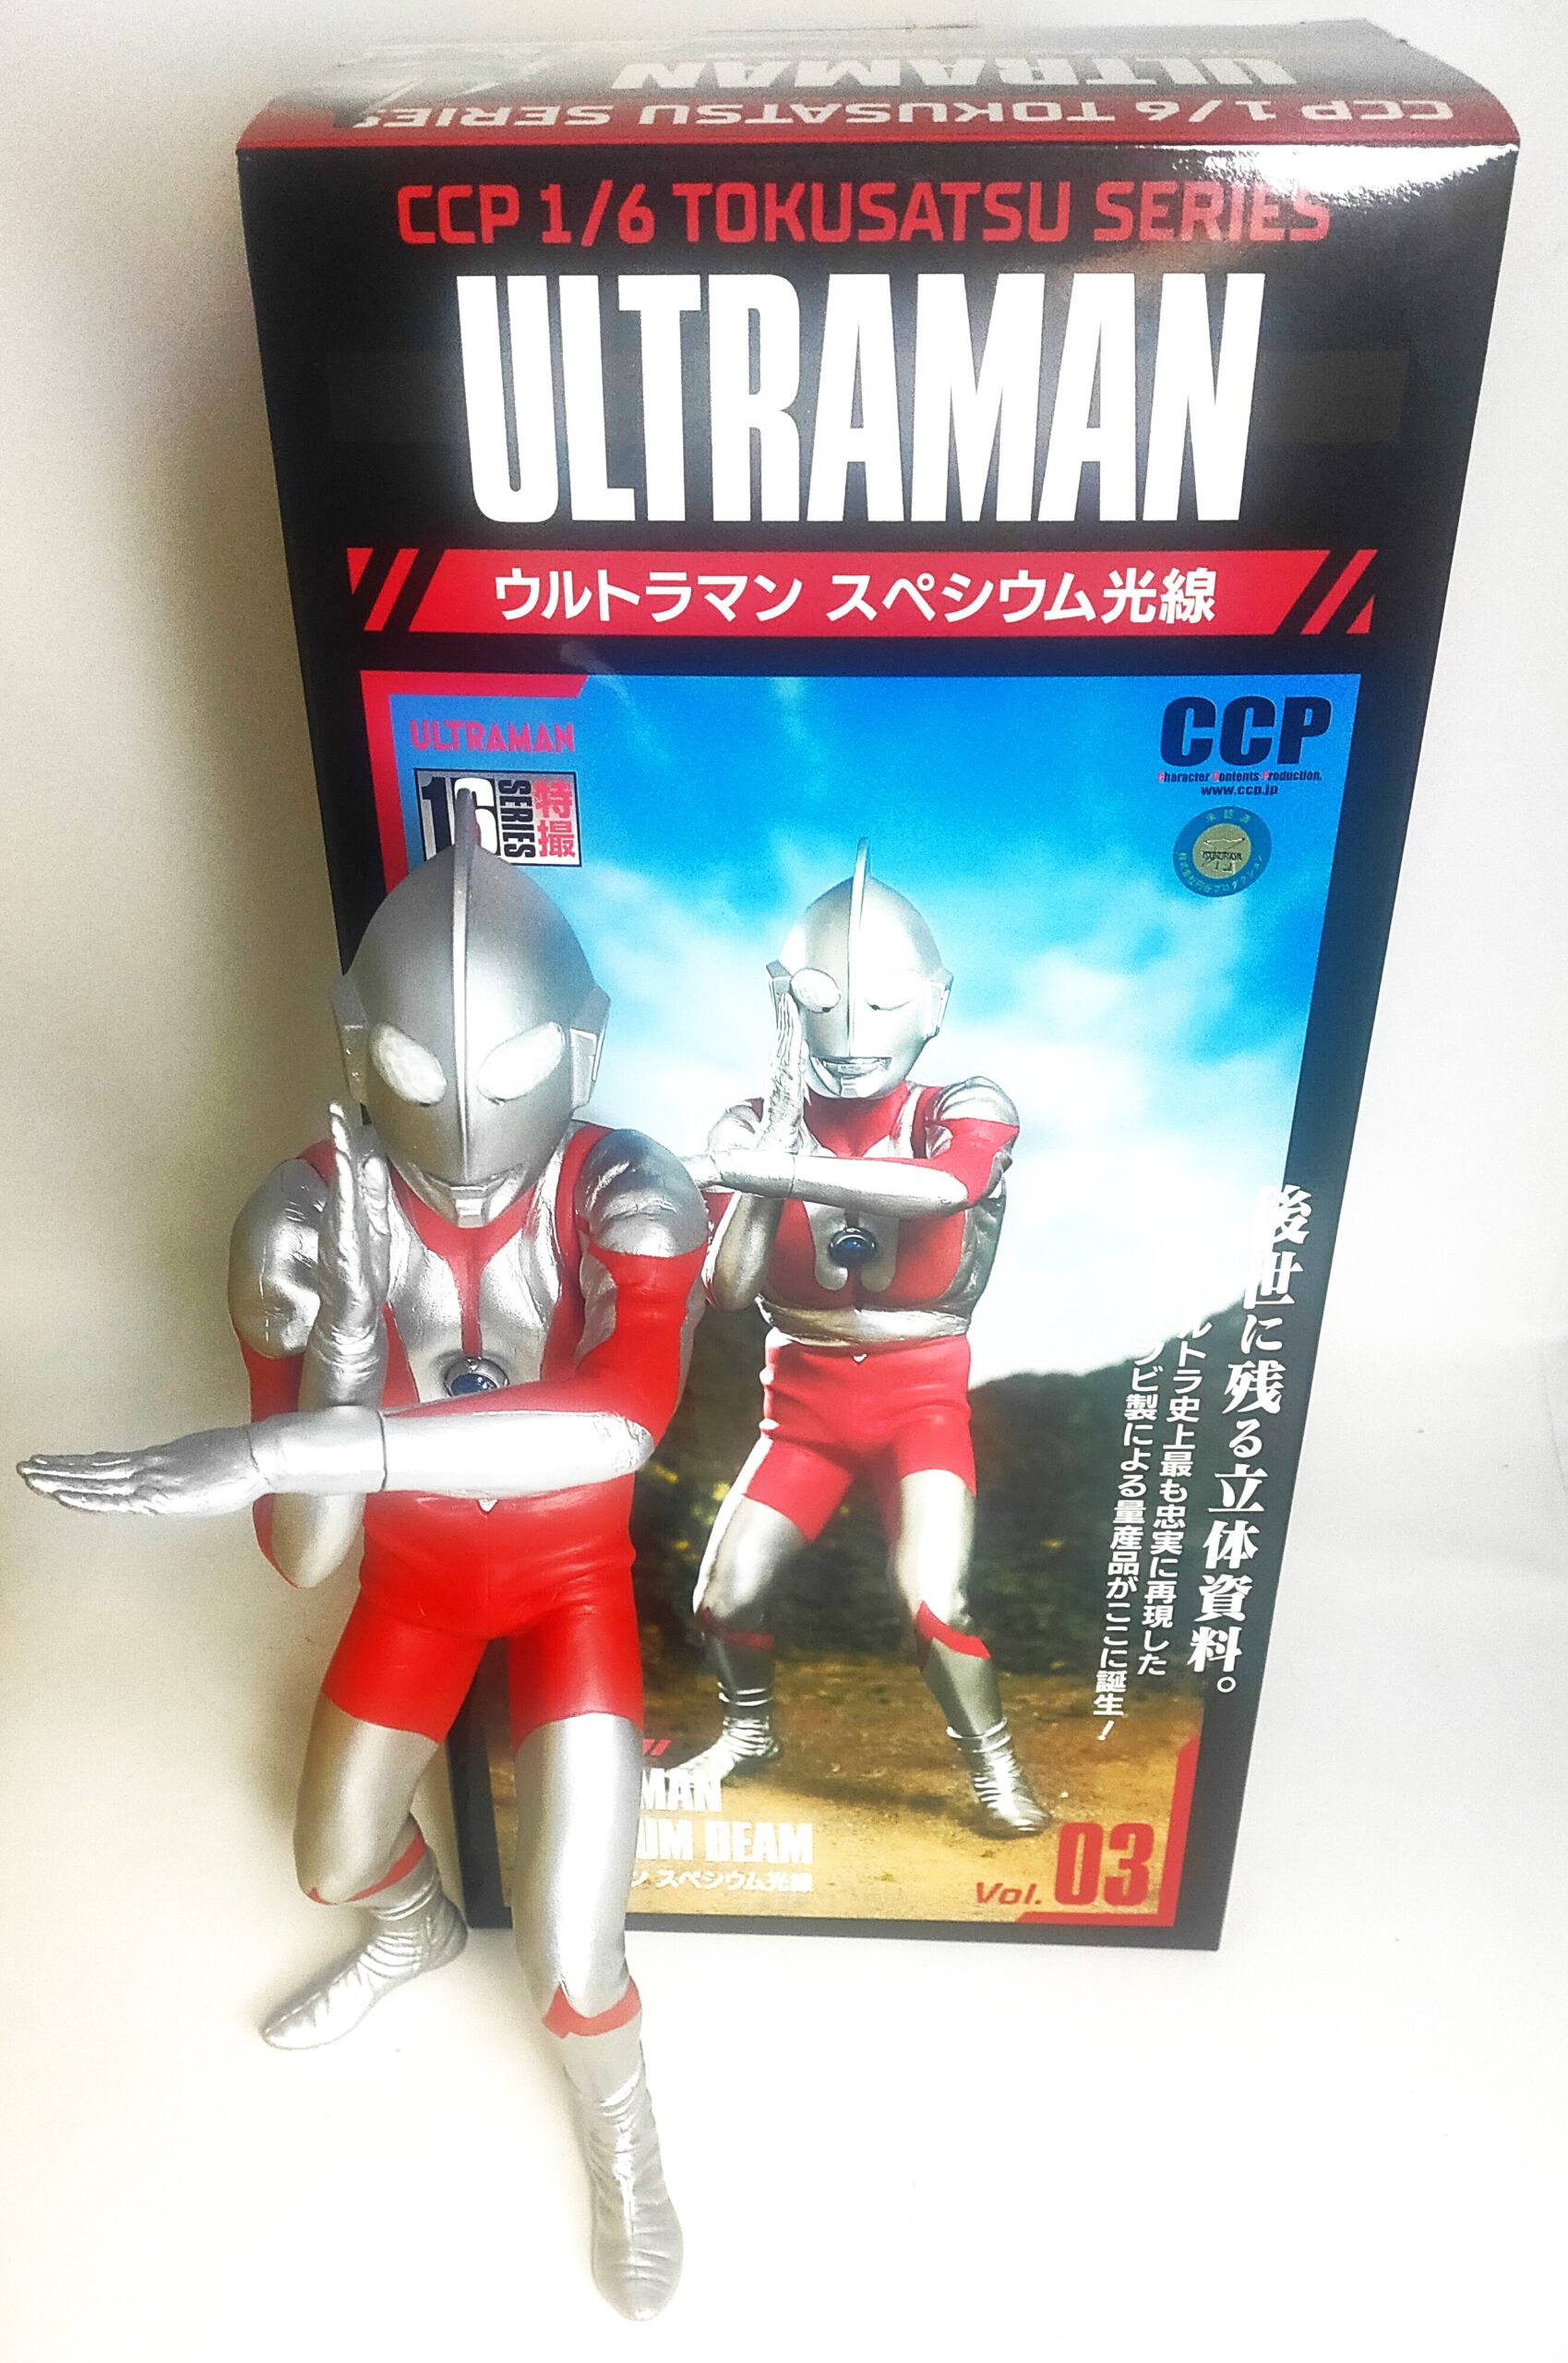 CCP ウルトラマン スペシウム光線 1/6 特撮シリーズ Vol.03 